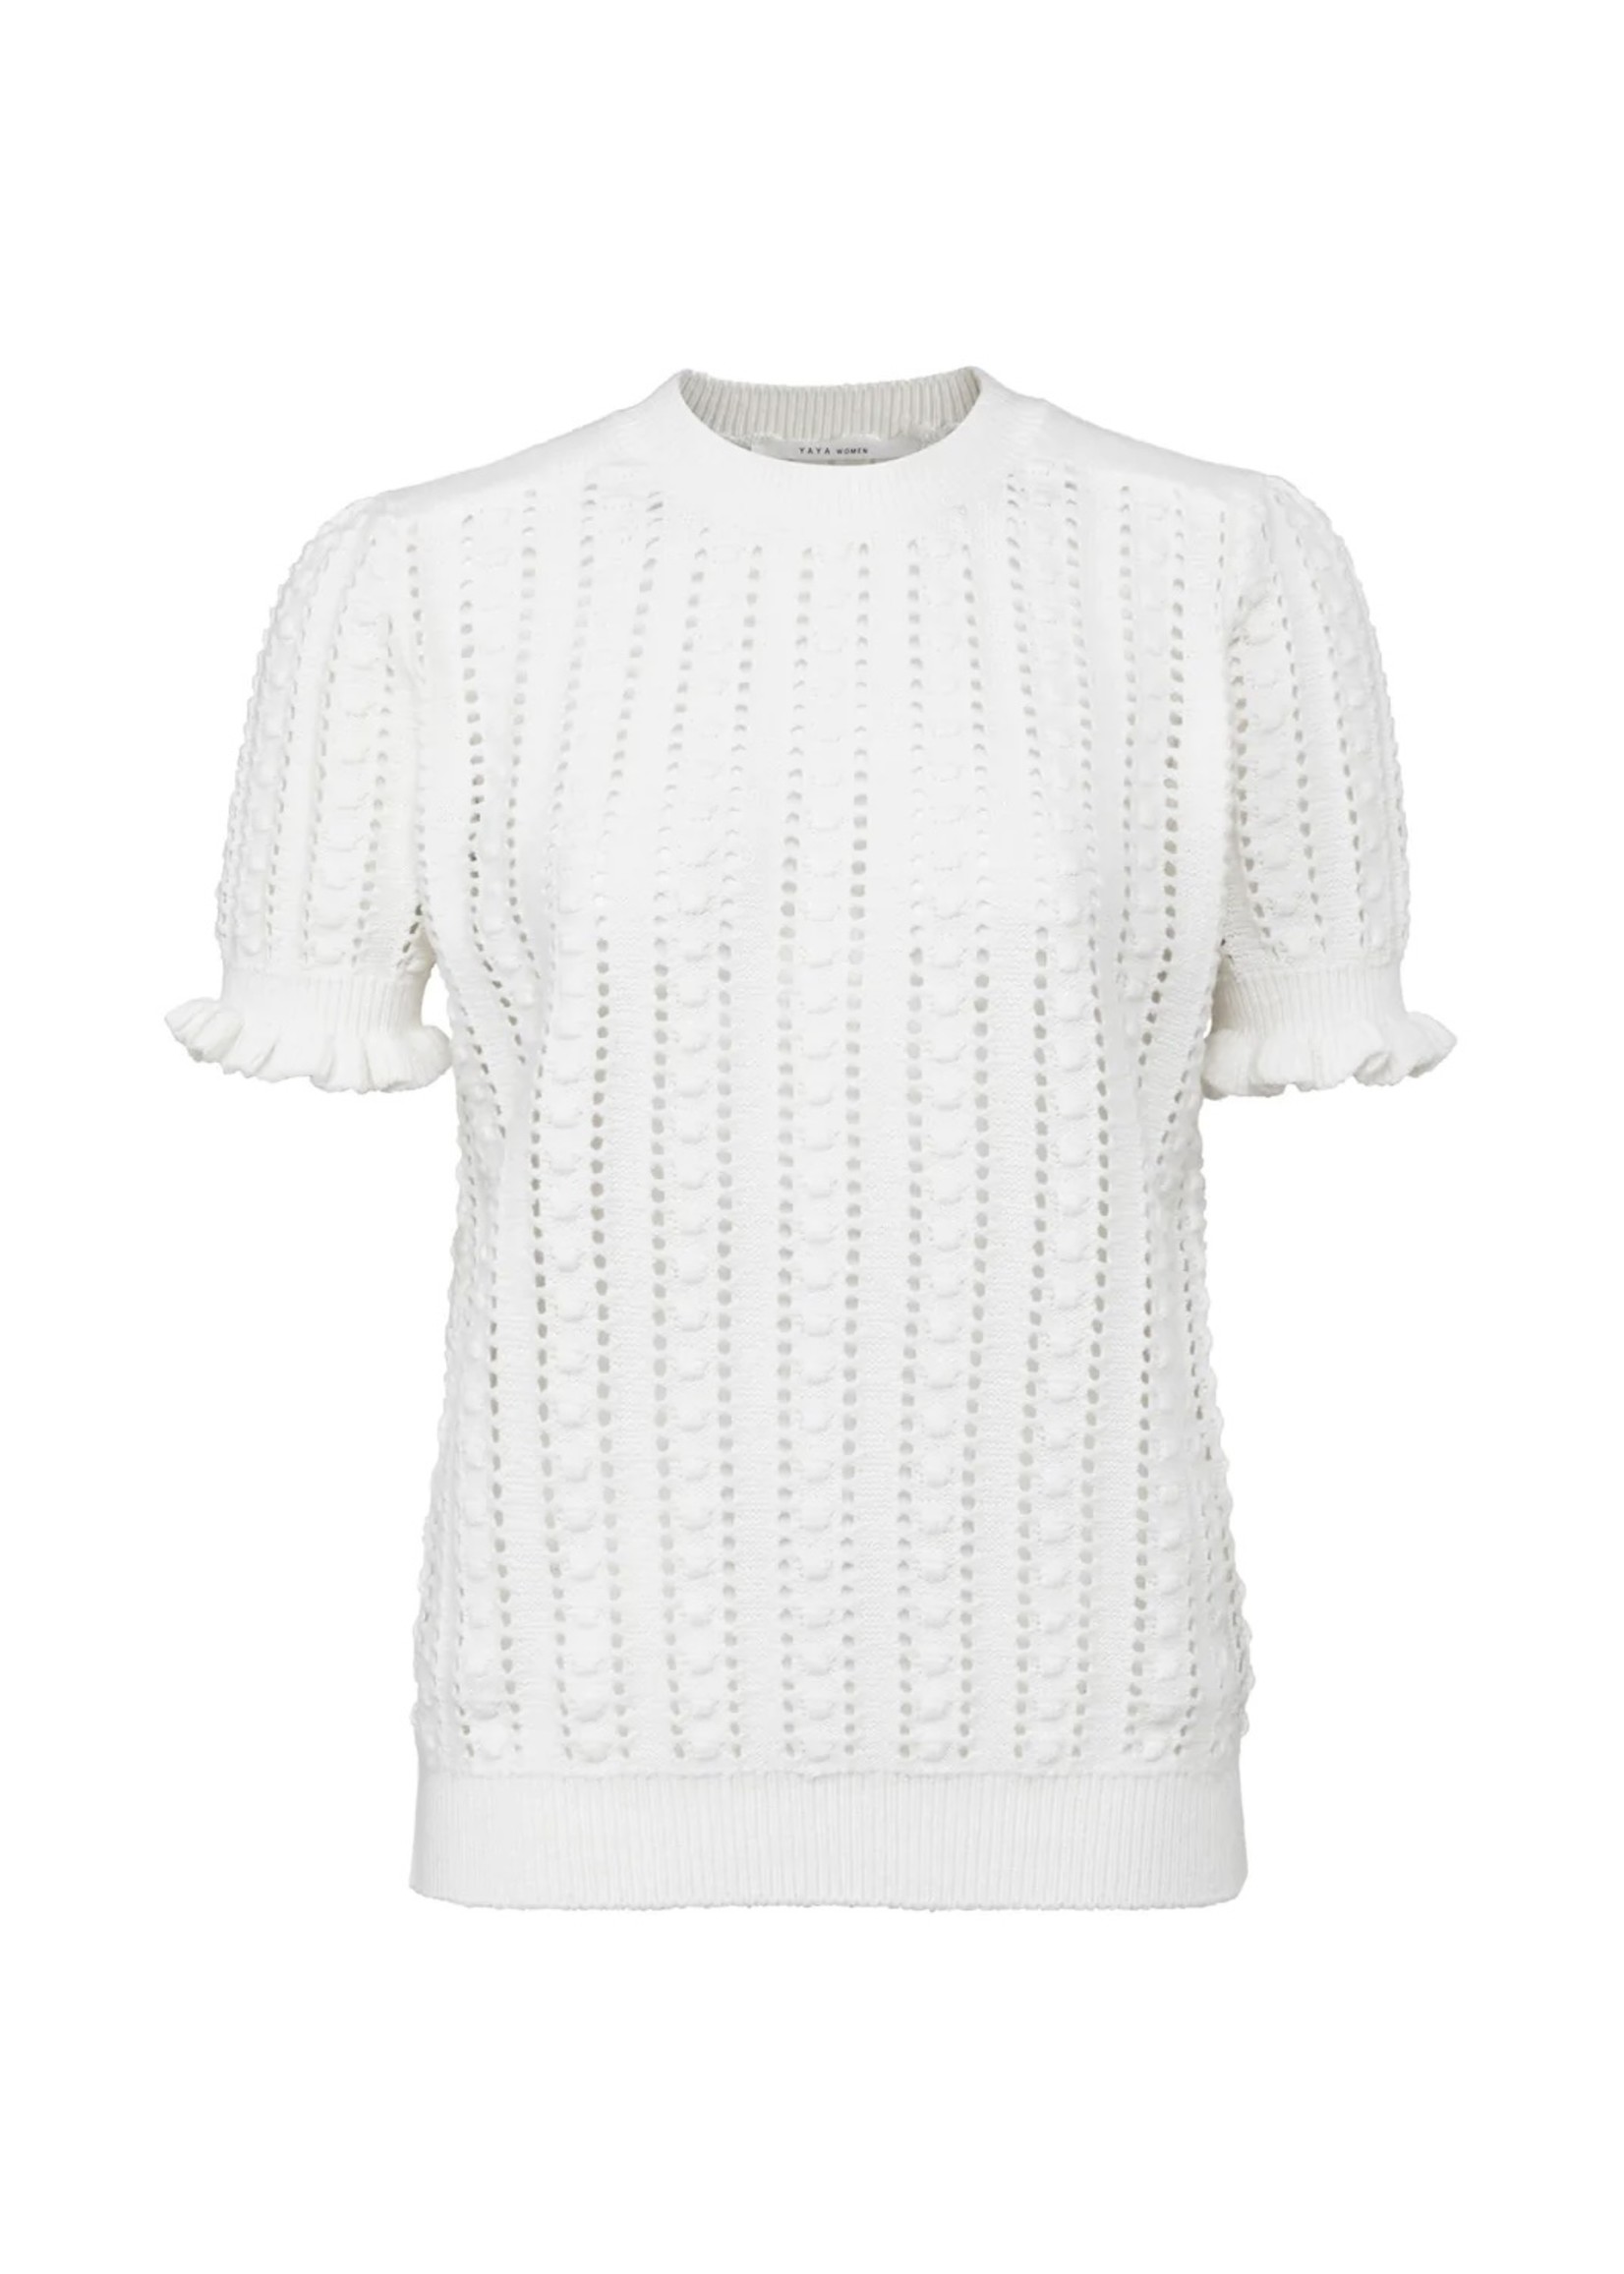 YAYA Yaya - Textured Sweater with short puff sleeves